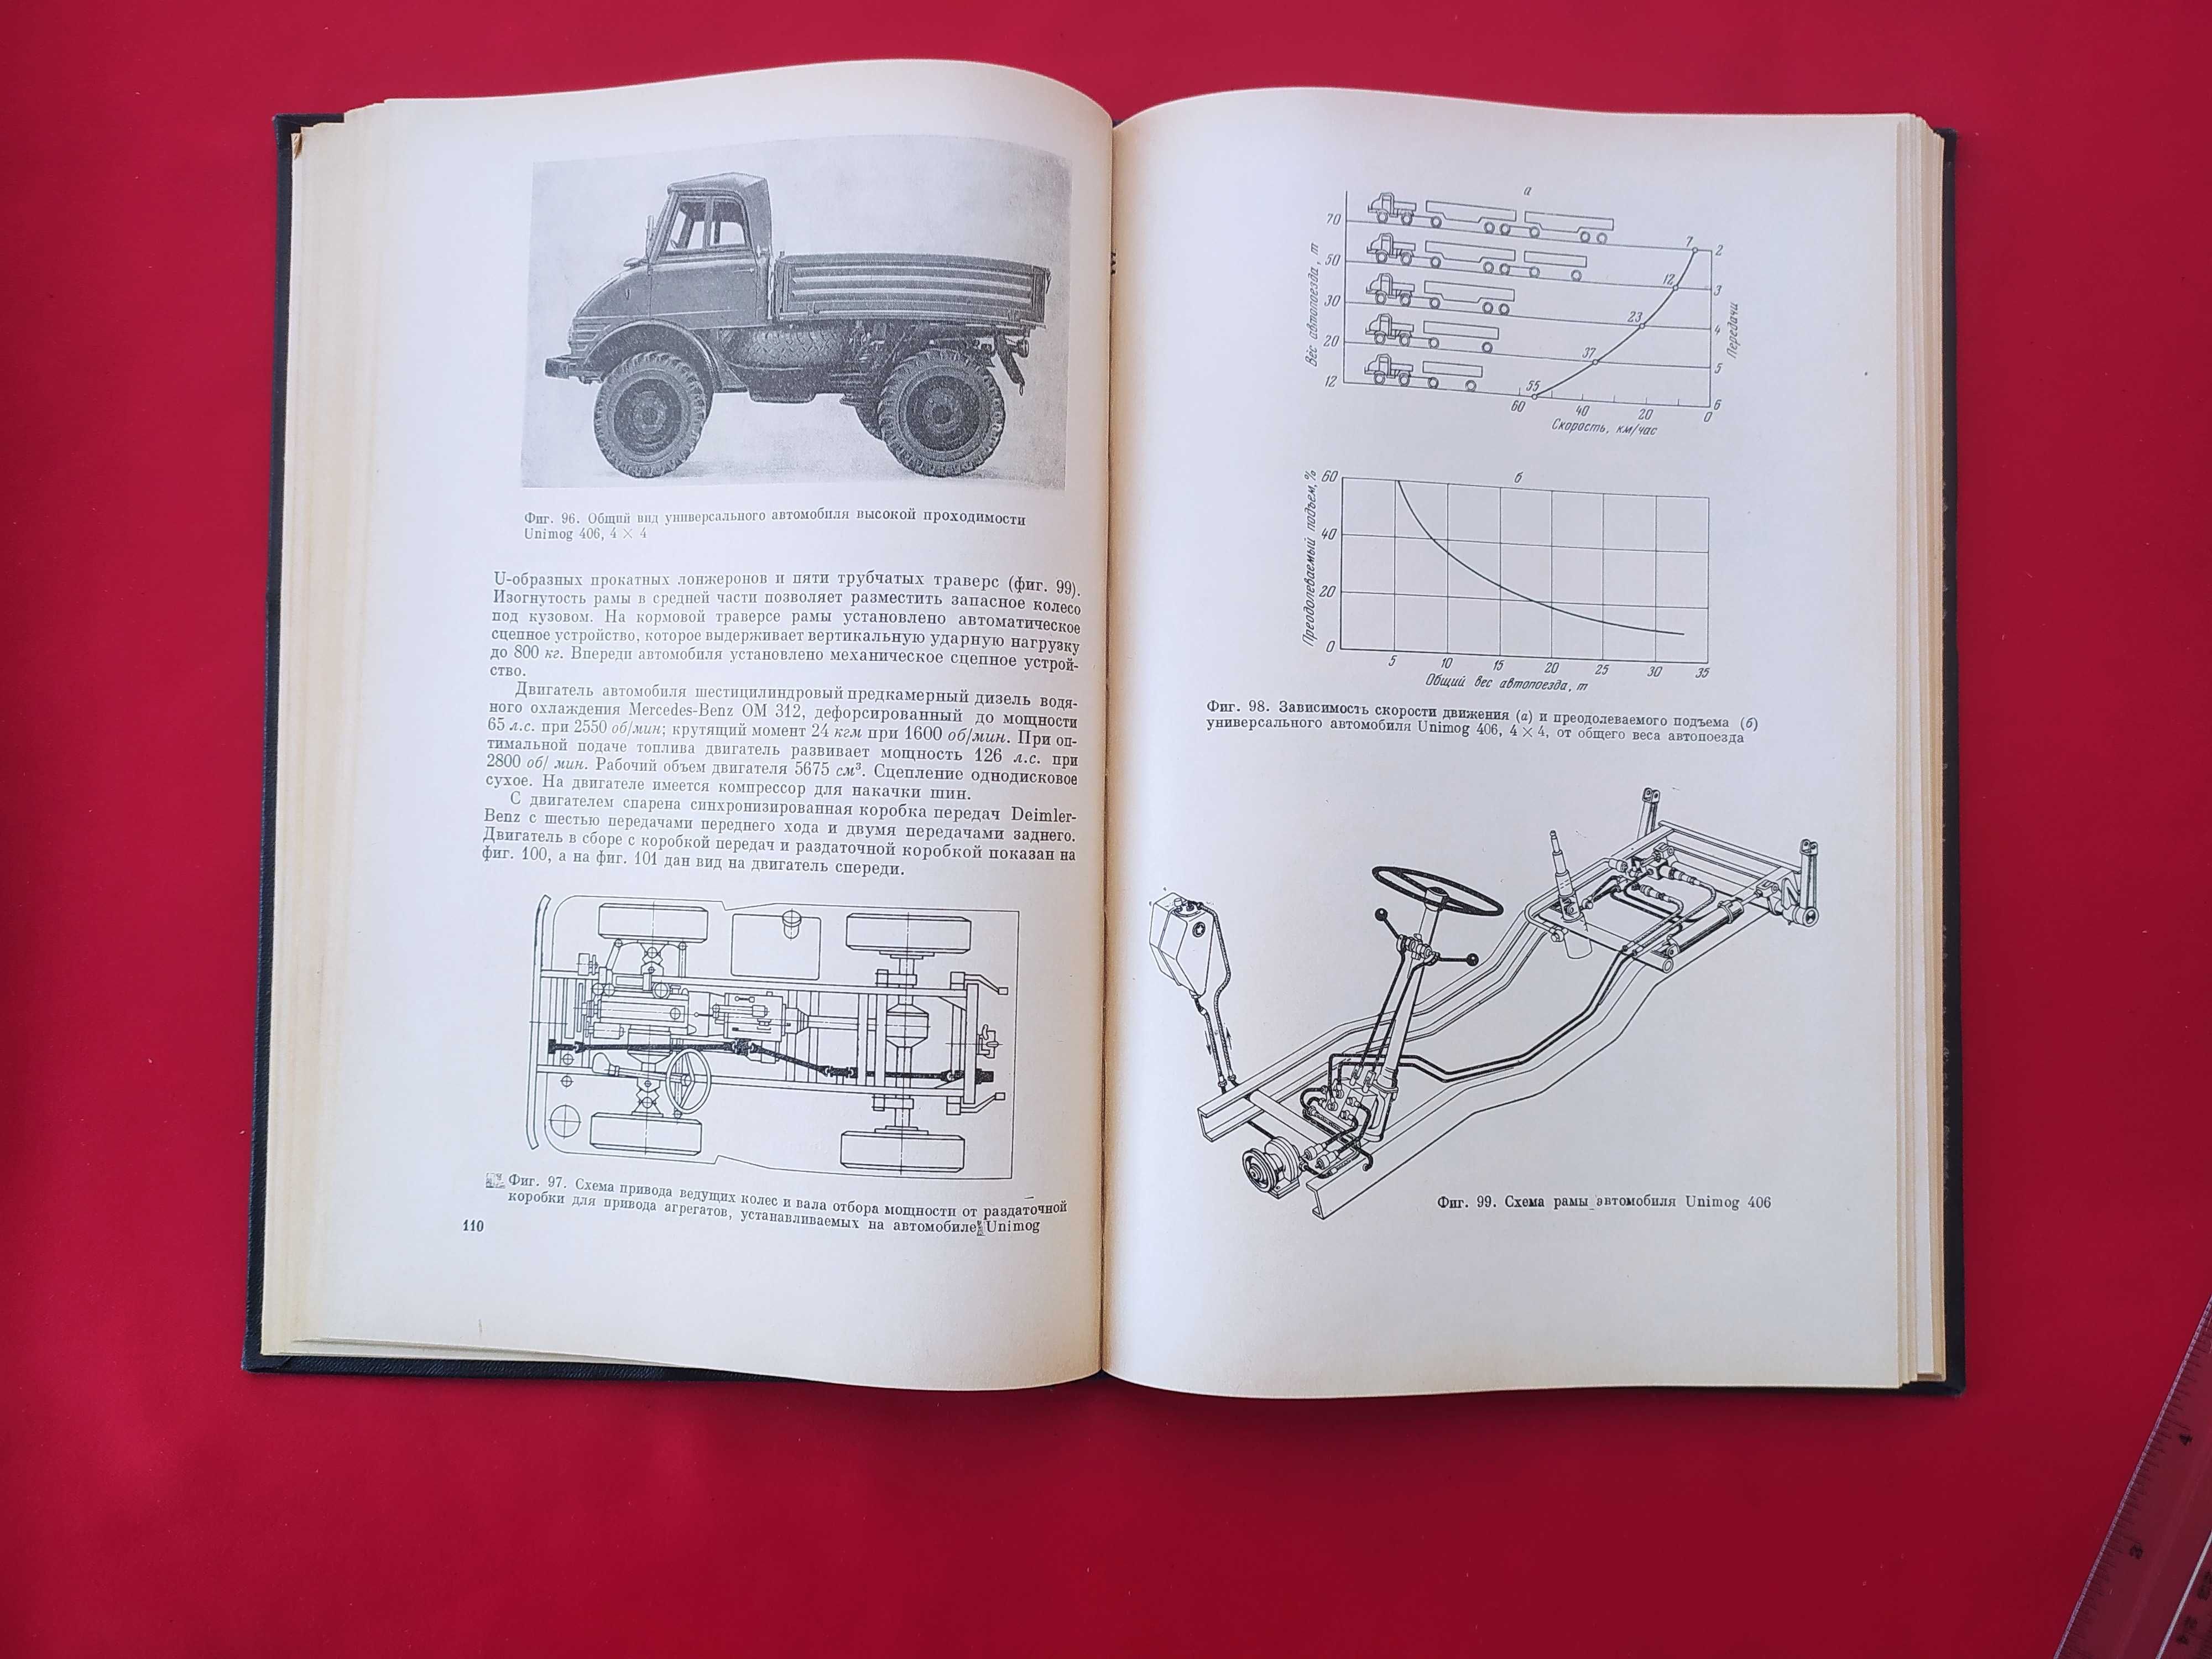 Автомобили и транспортные гусеничные машины высокой проходимости 1967